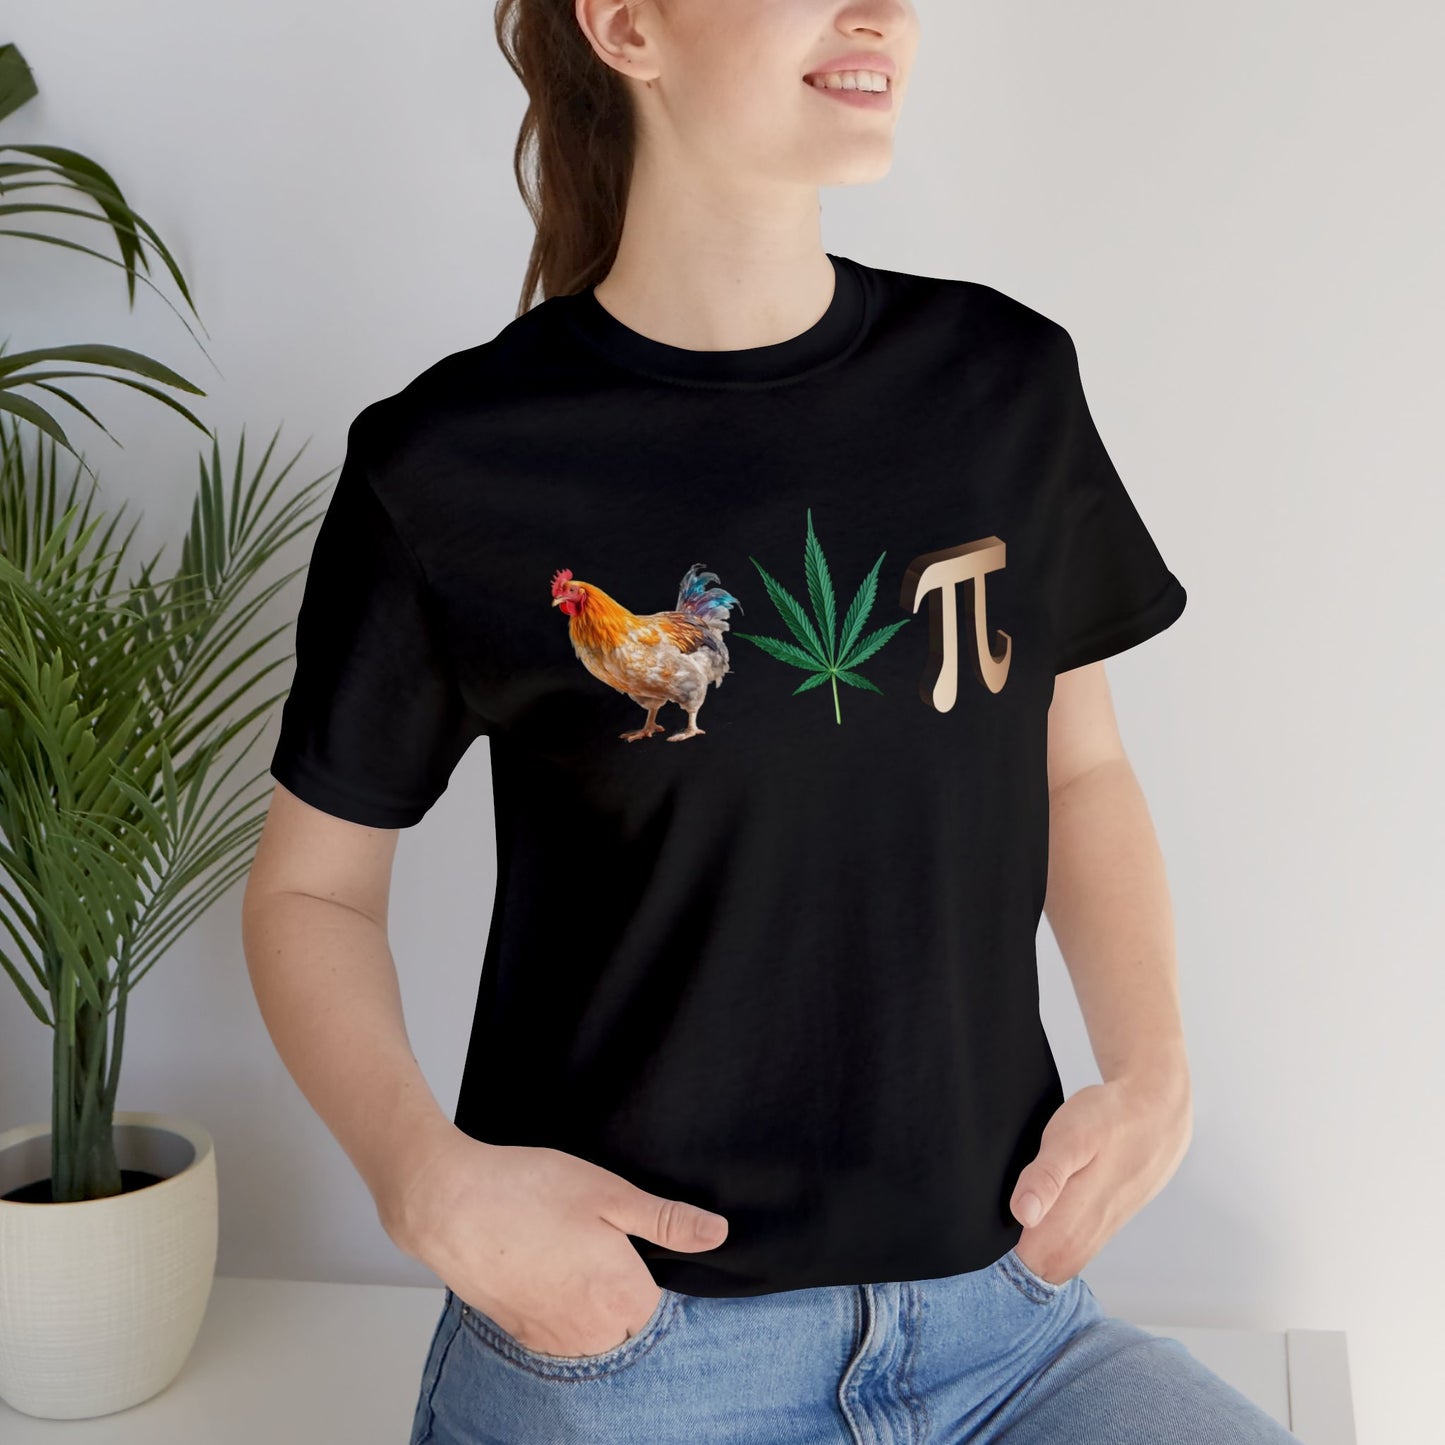 Chicken Pot Pi (Pun) T-shirt